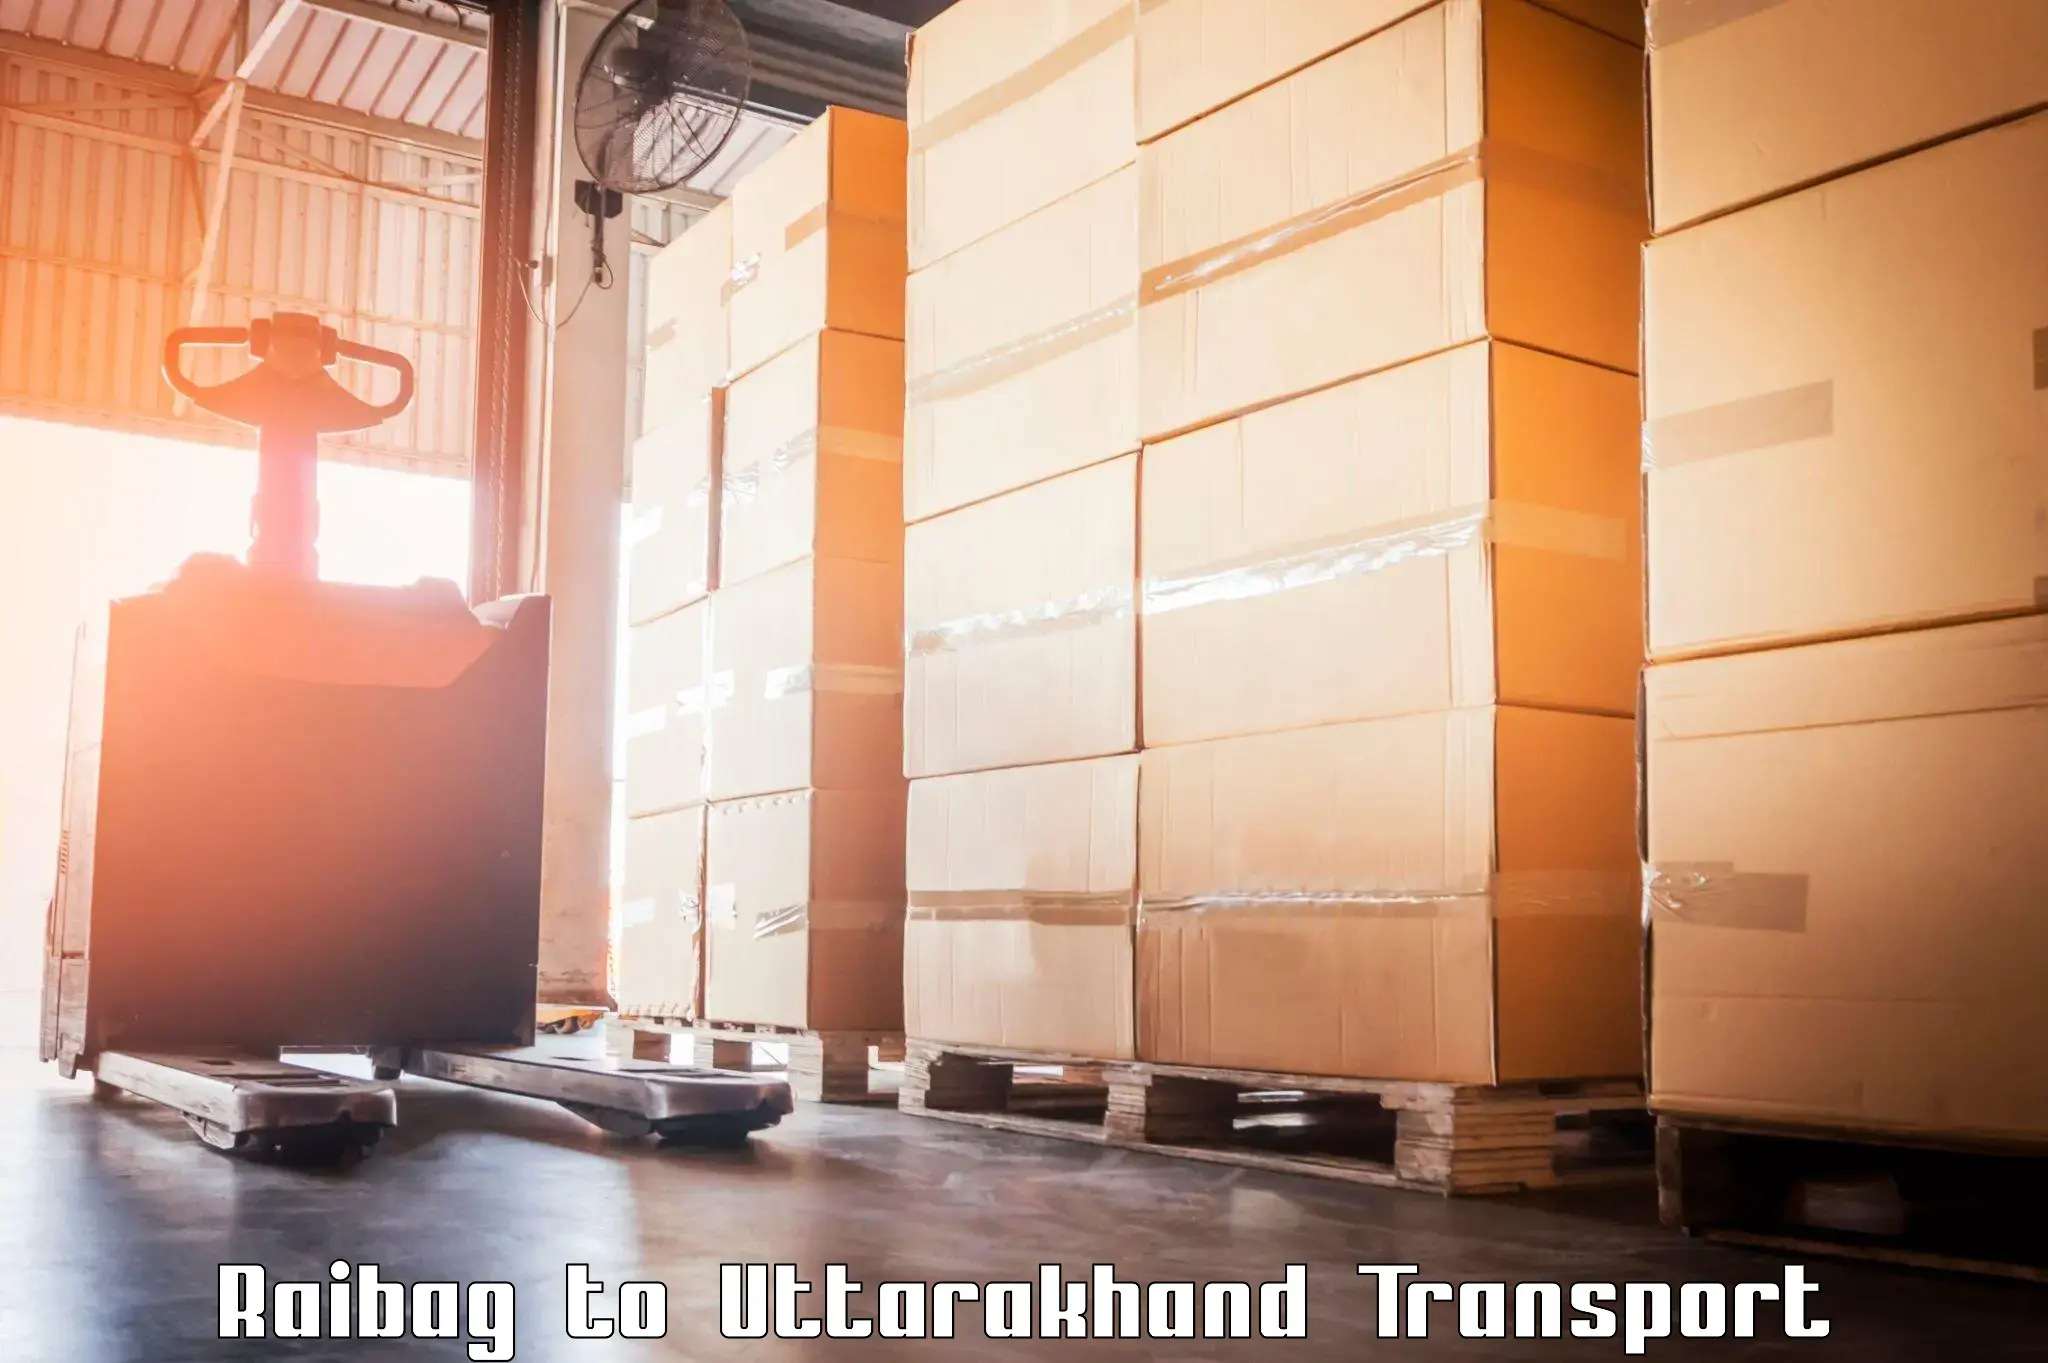 Cargo transport services Raibag to Uttarkashi